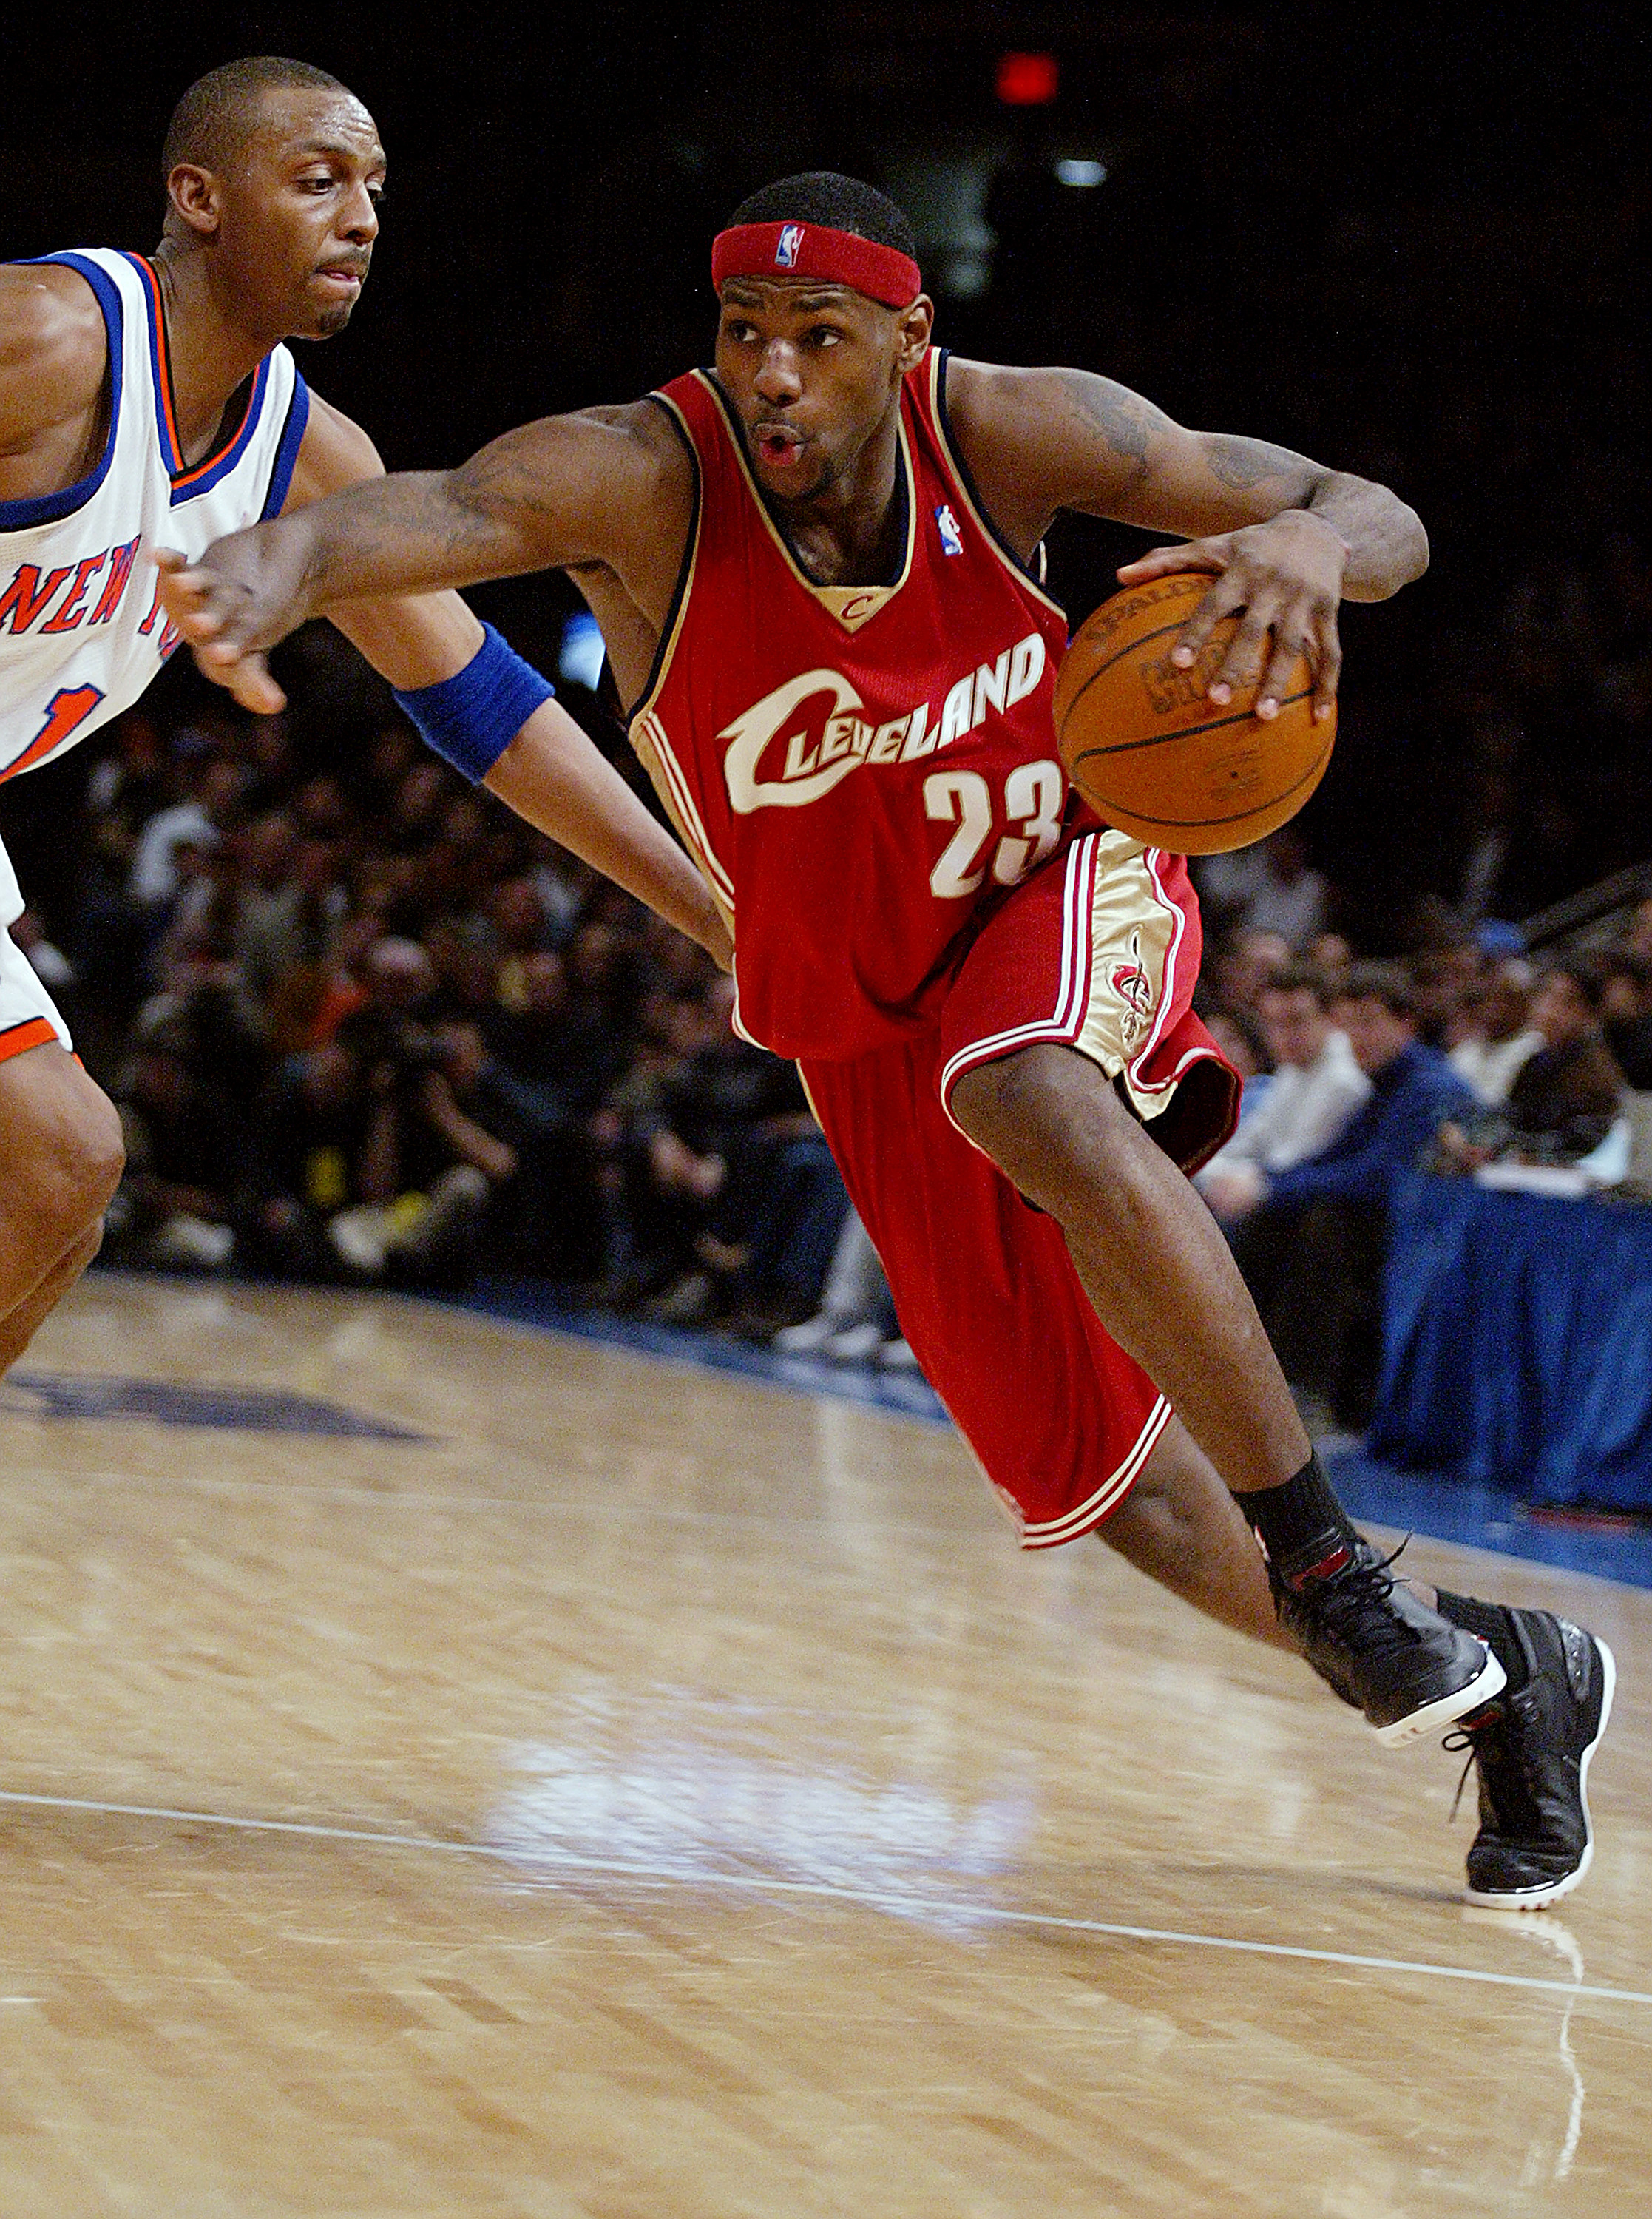 LeBron James au début de sa carrière, jouant pour les Cleveland Cavaliers vers 2002 | Source : Getty Images